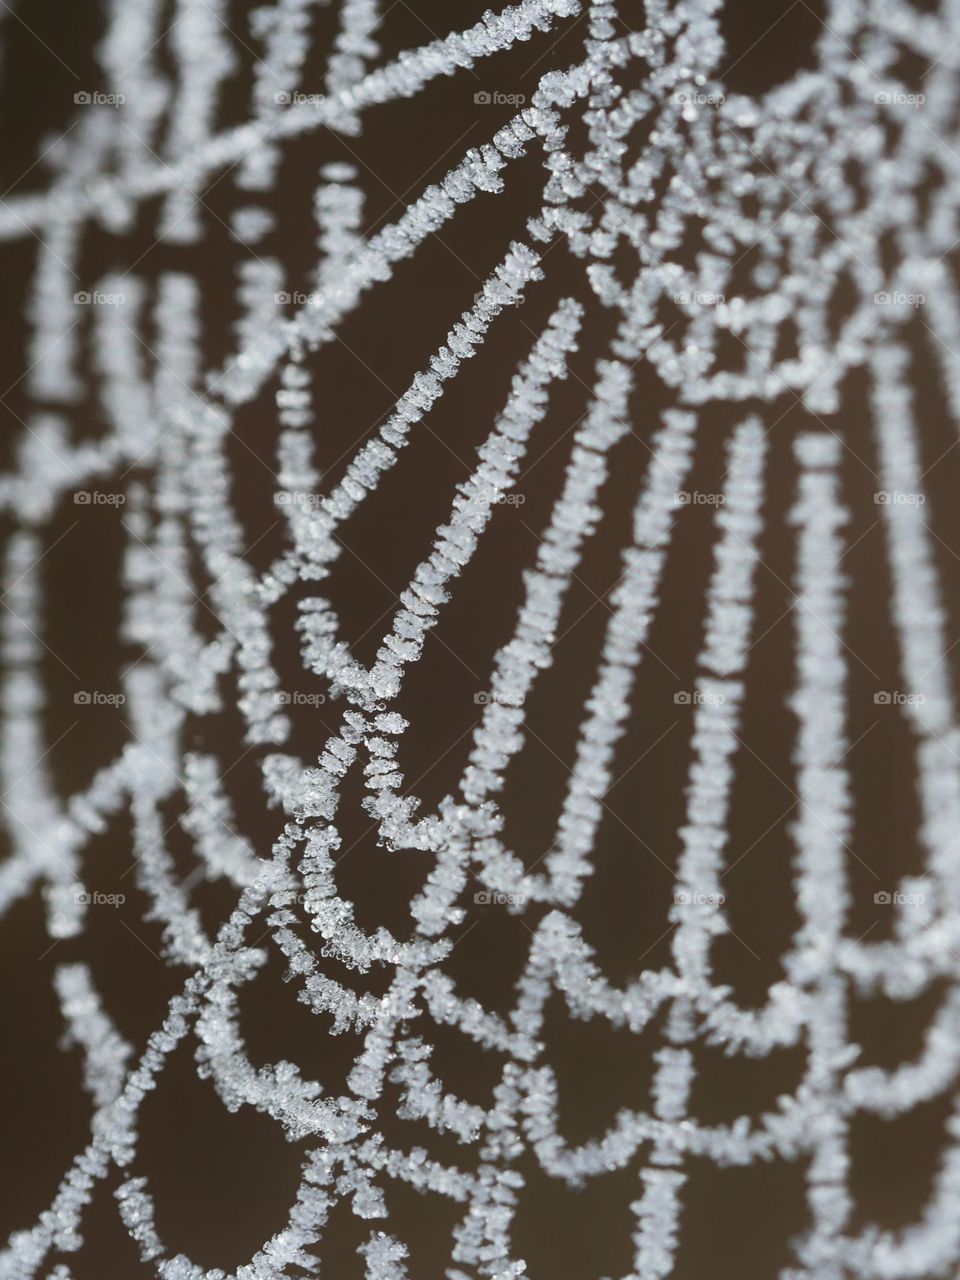 Frozen spiderweb